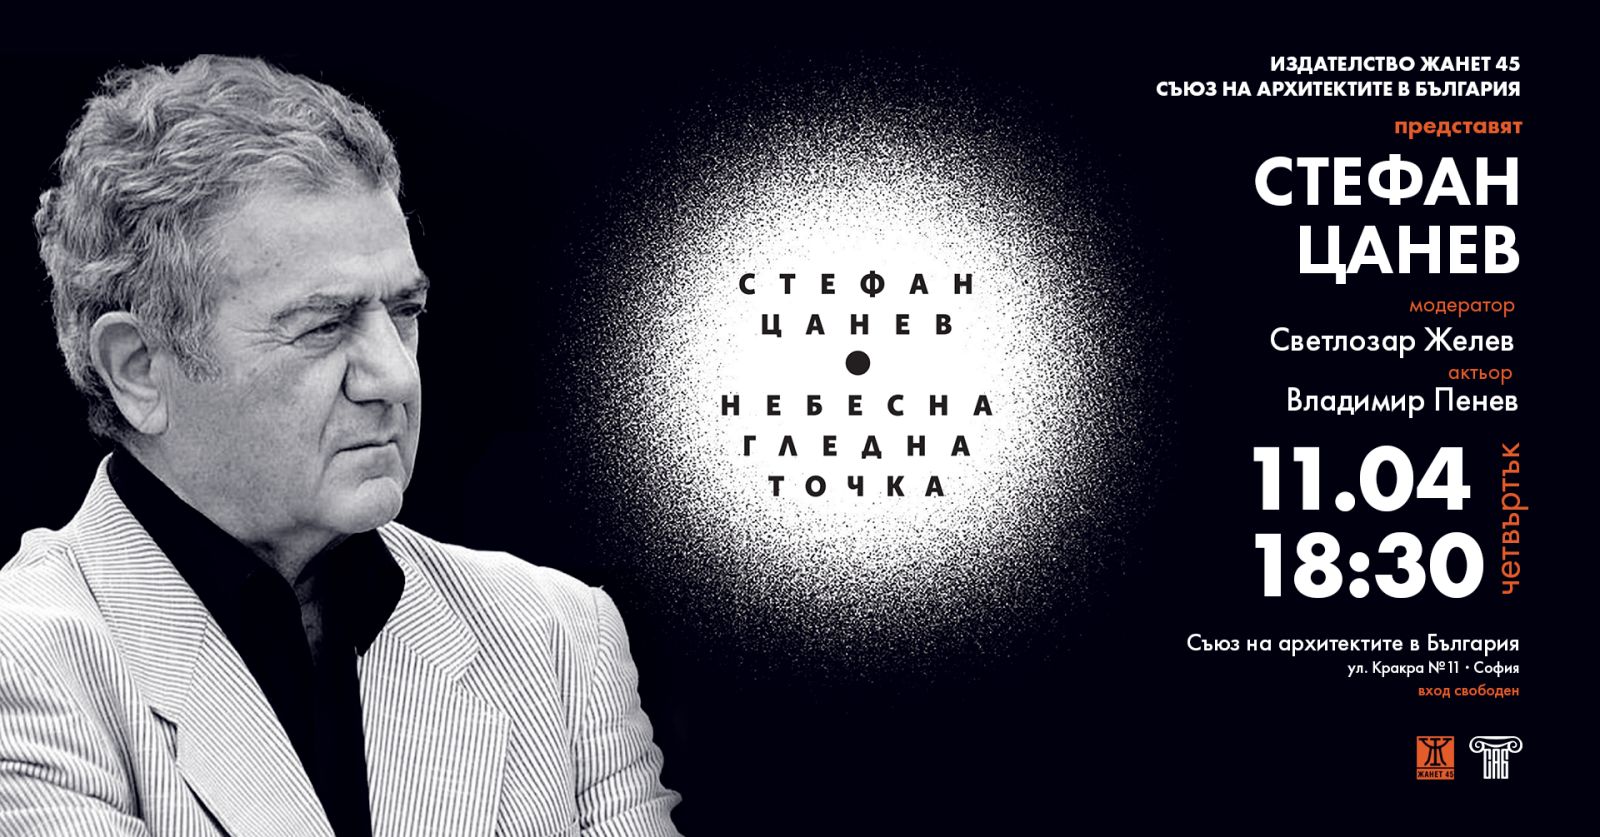 Стефан Цанев представя поетичната книга "НЕБЕСНА ГЛЕДНА ТОЧКА"